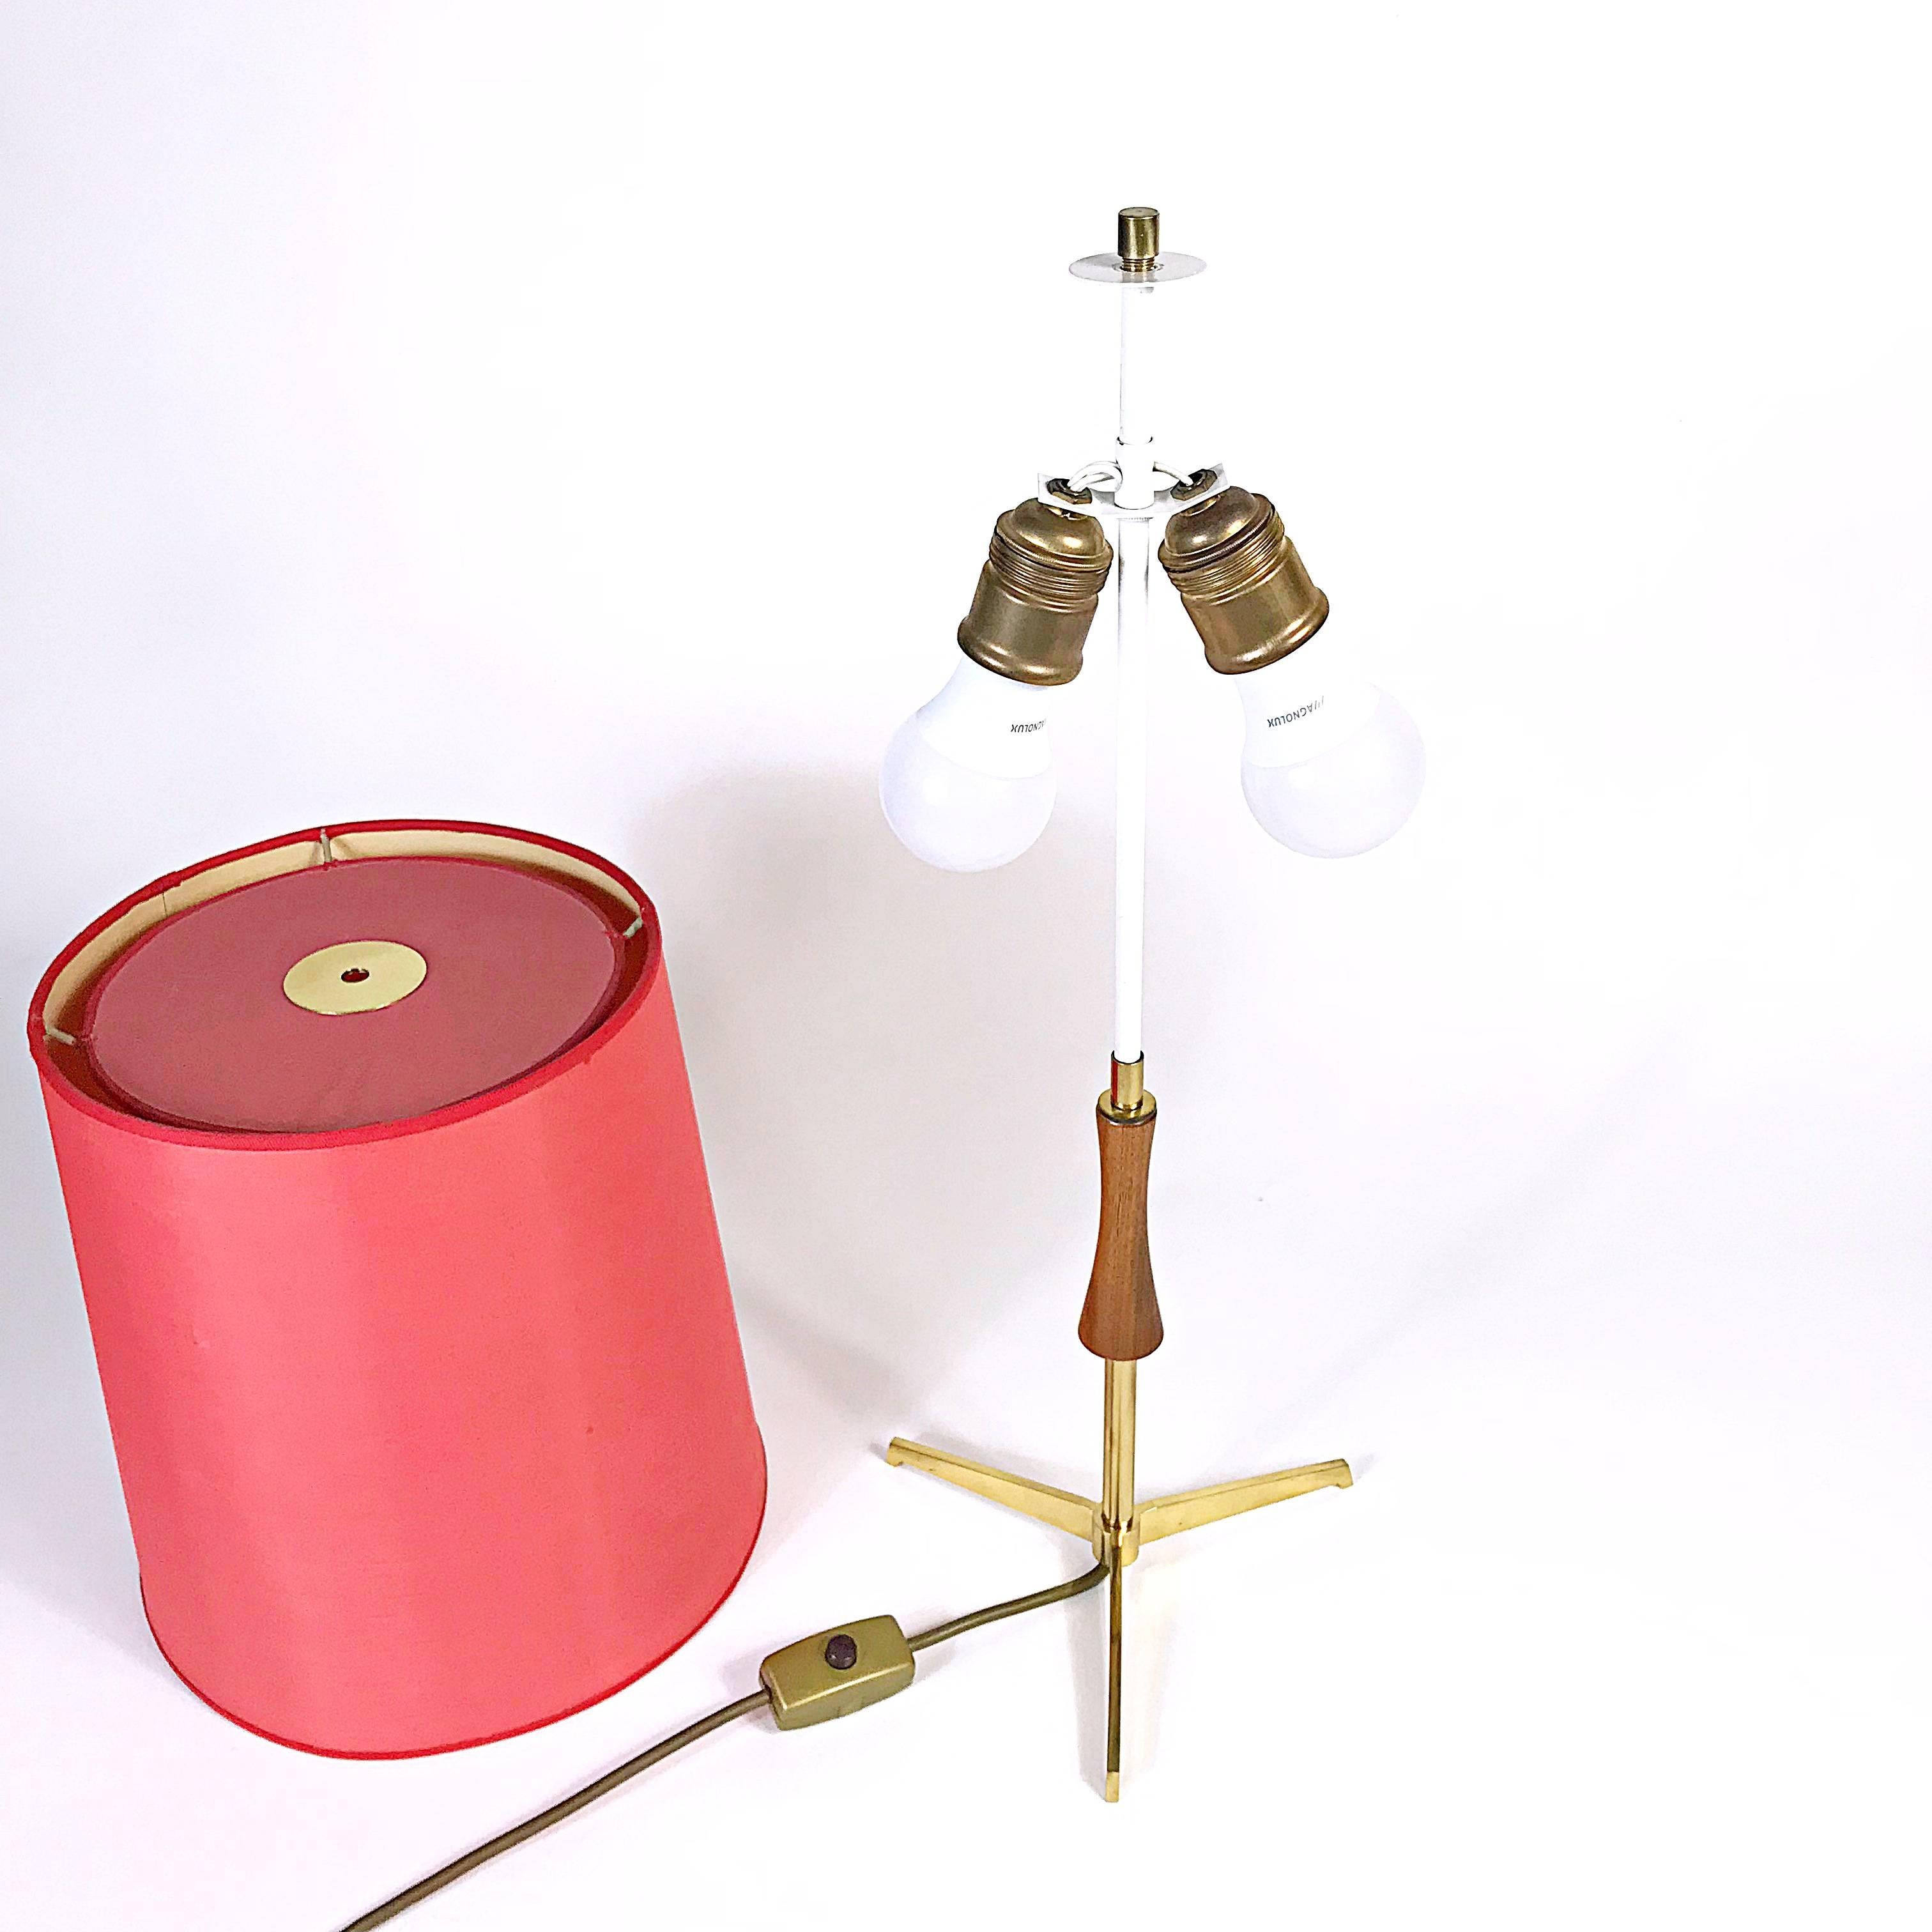 Midcentury J.T. Kalmar Brass Tripod Table Lamp, Red Shade, 1950s, Austria (Österreichisch)